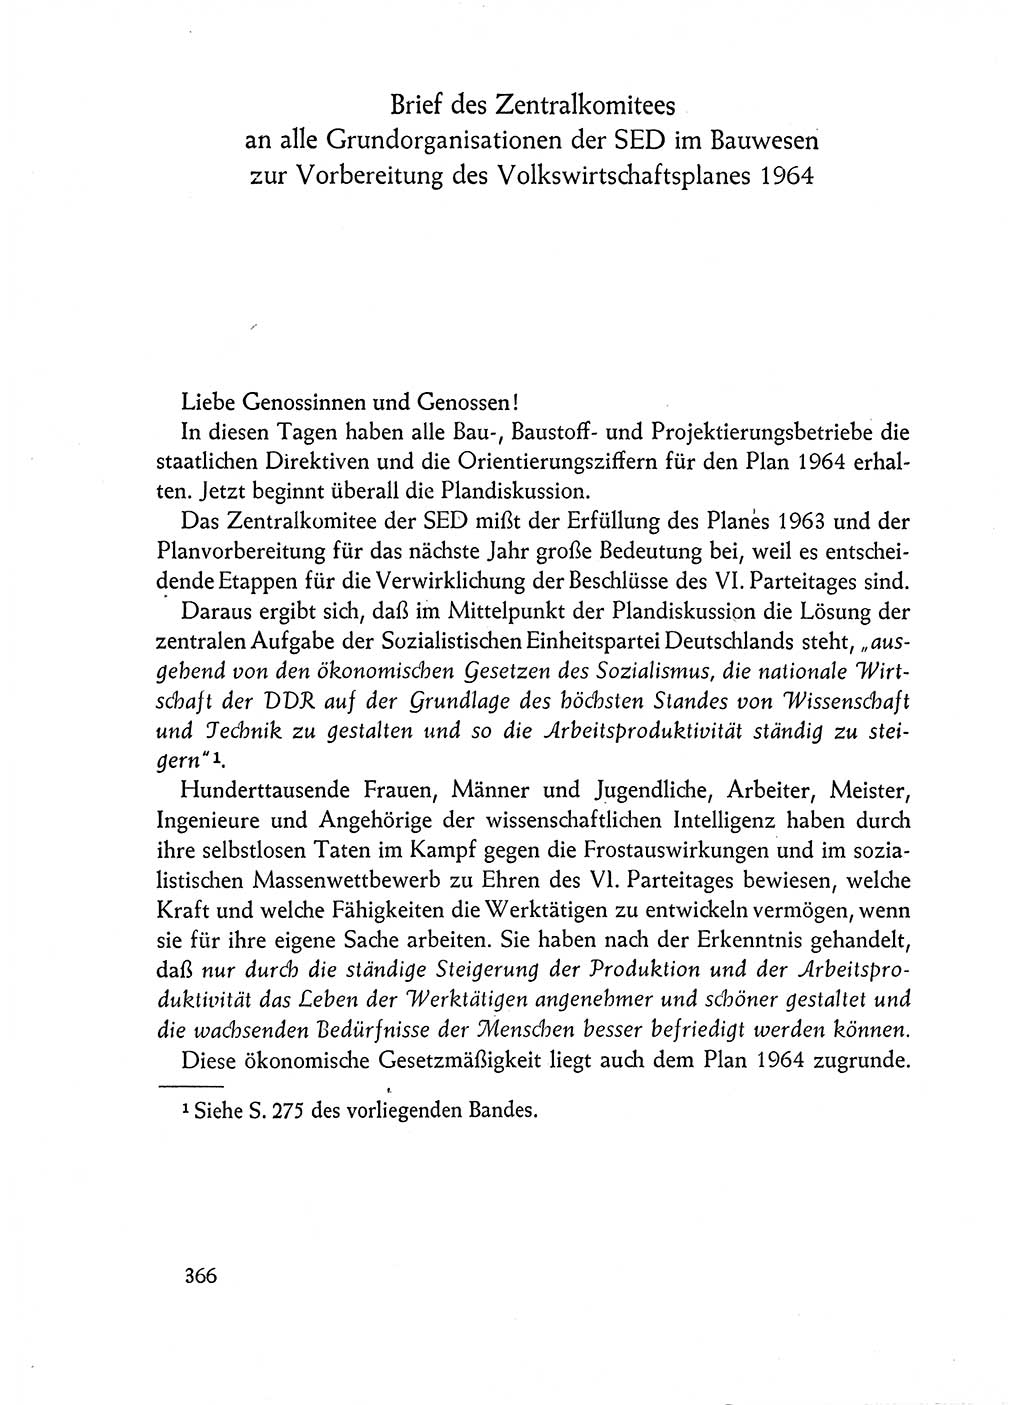 Dokumente der Sozialistischen Einheitspartei Deutschlands (SED) [Deutsche Demokratische Republik (DDR)] 1962-1963, Seite 366 (Dok. SED DDR 1962-1963, S. 366)